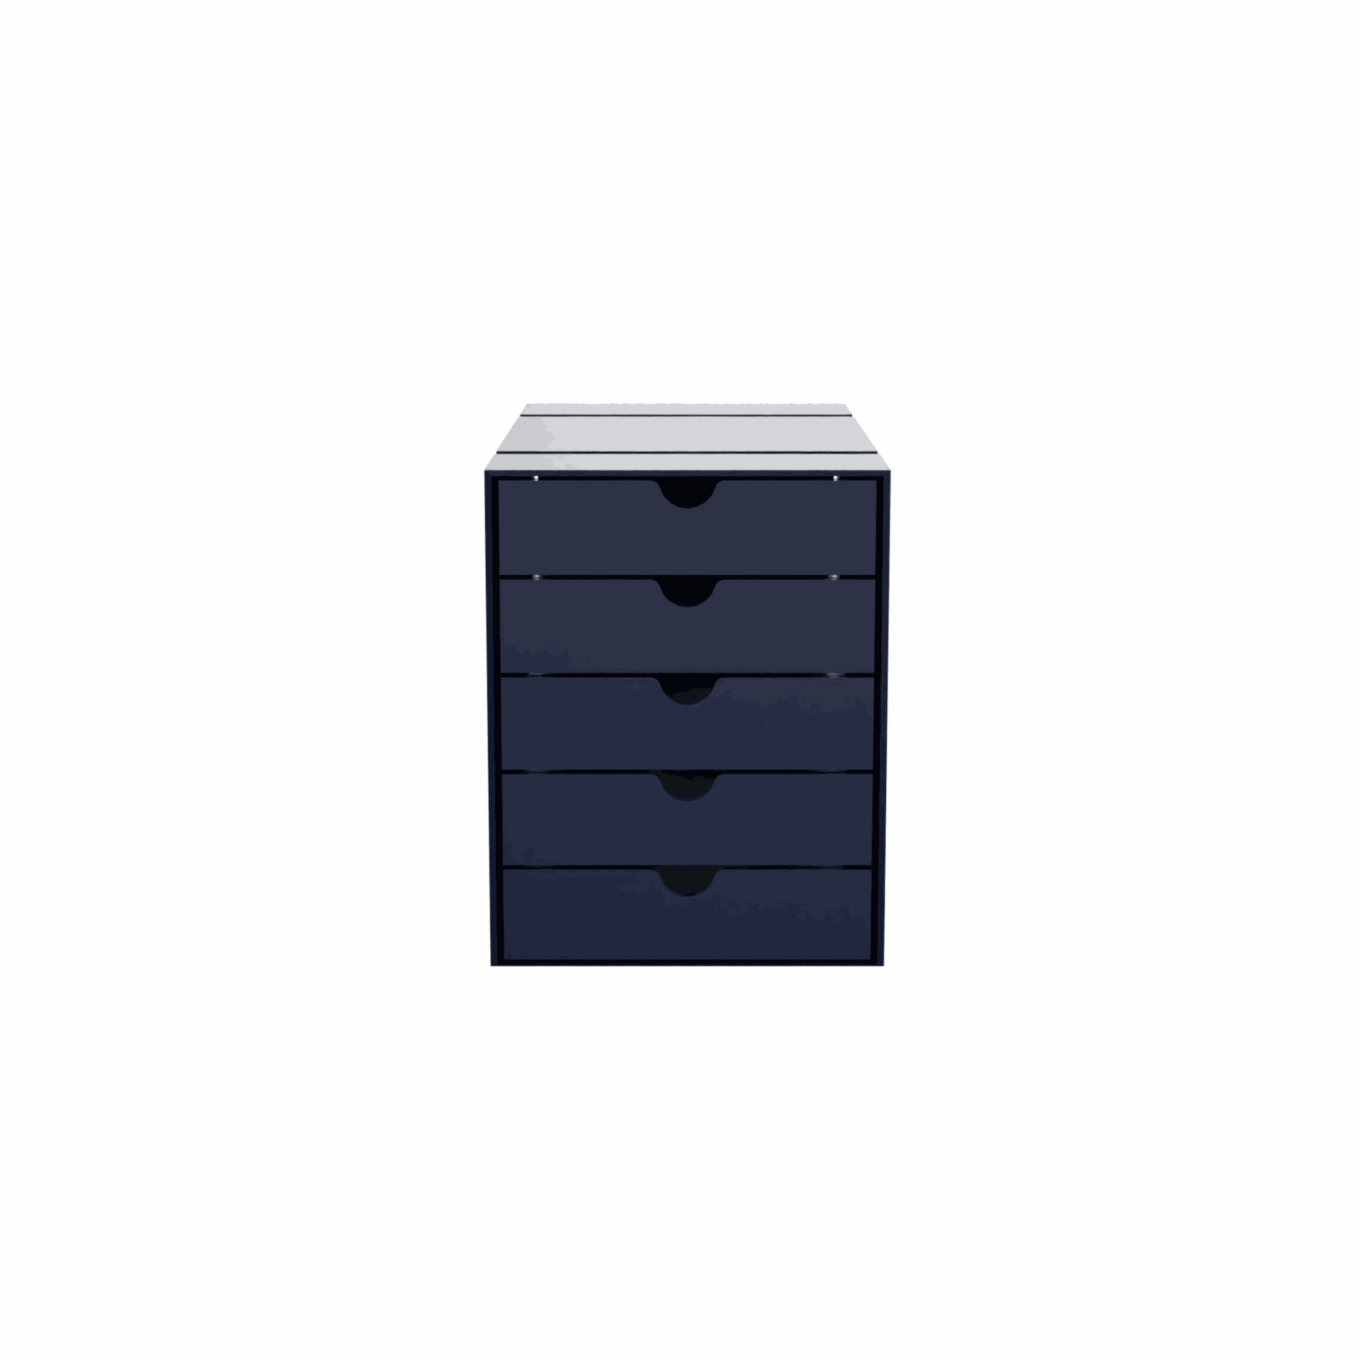 USM boîte Inos – 5 tiroirs - Image #1